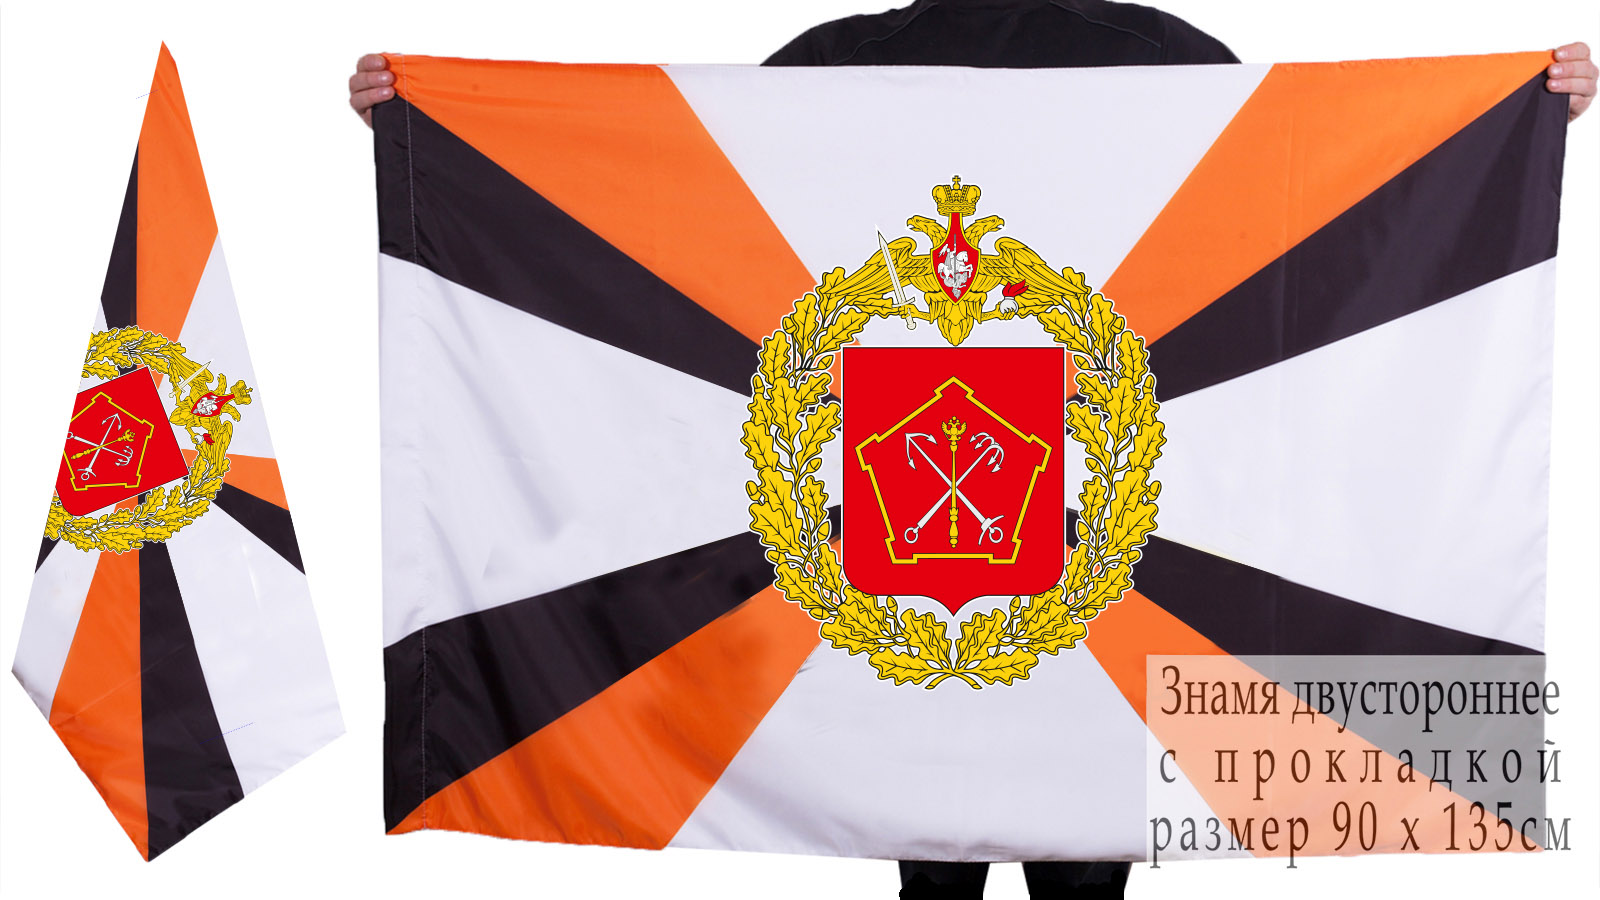 Купить двухсторонний флаг Ленинградского военного округа